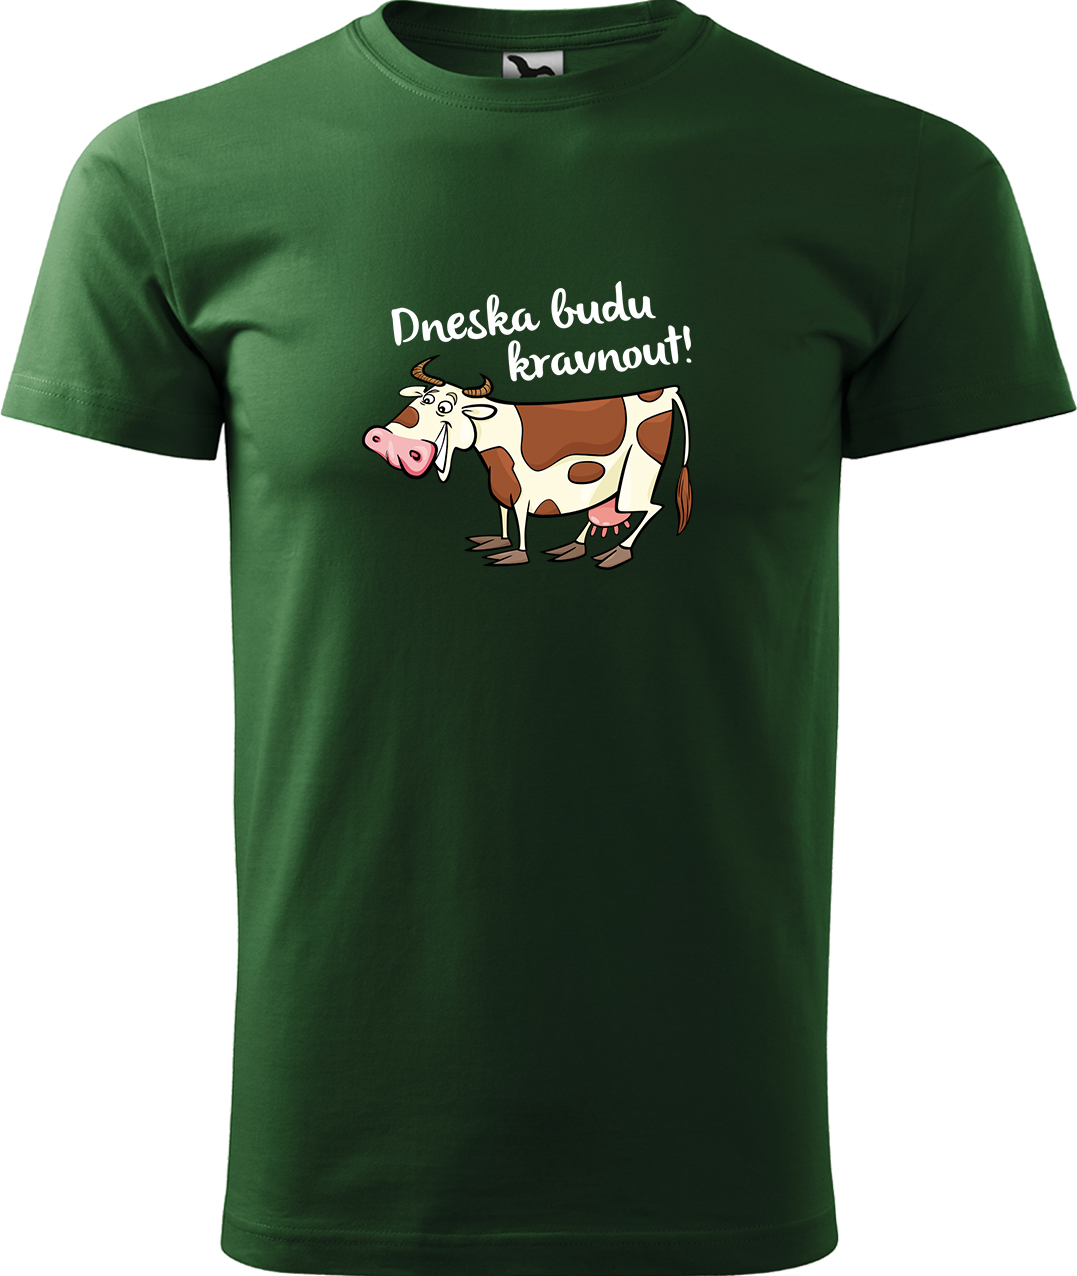 Pánské tričko s krávou - Dneska budu kravnout! Velikost: XL, Barva: Lahvově zelená (06), Střih: pánský